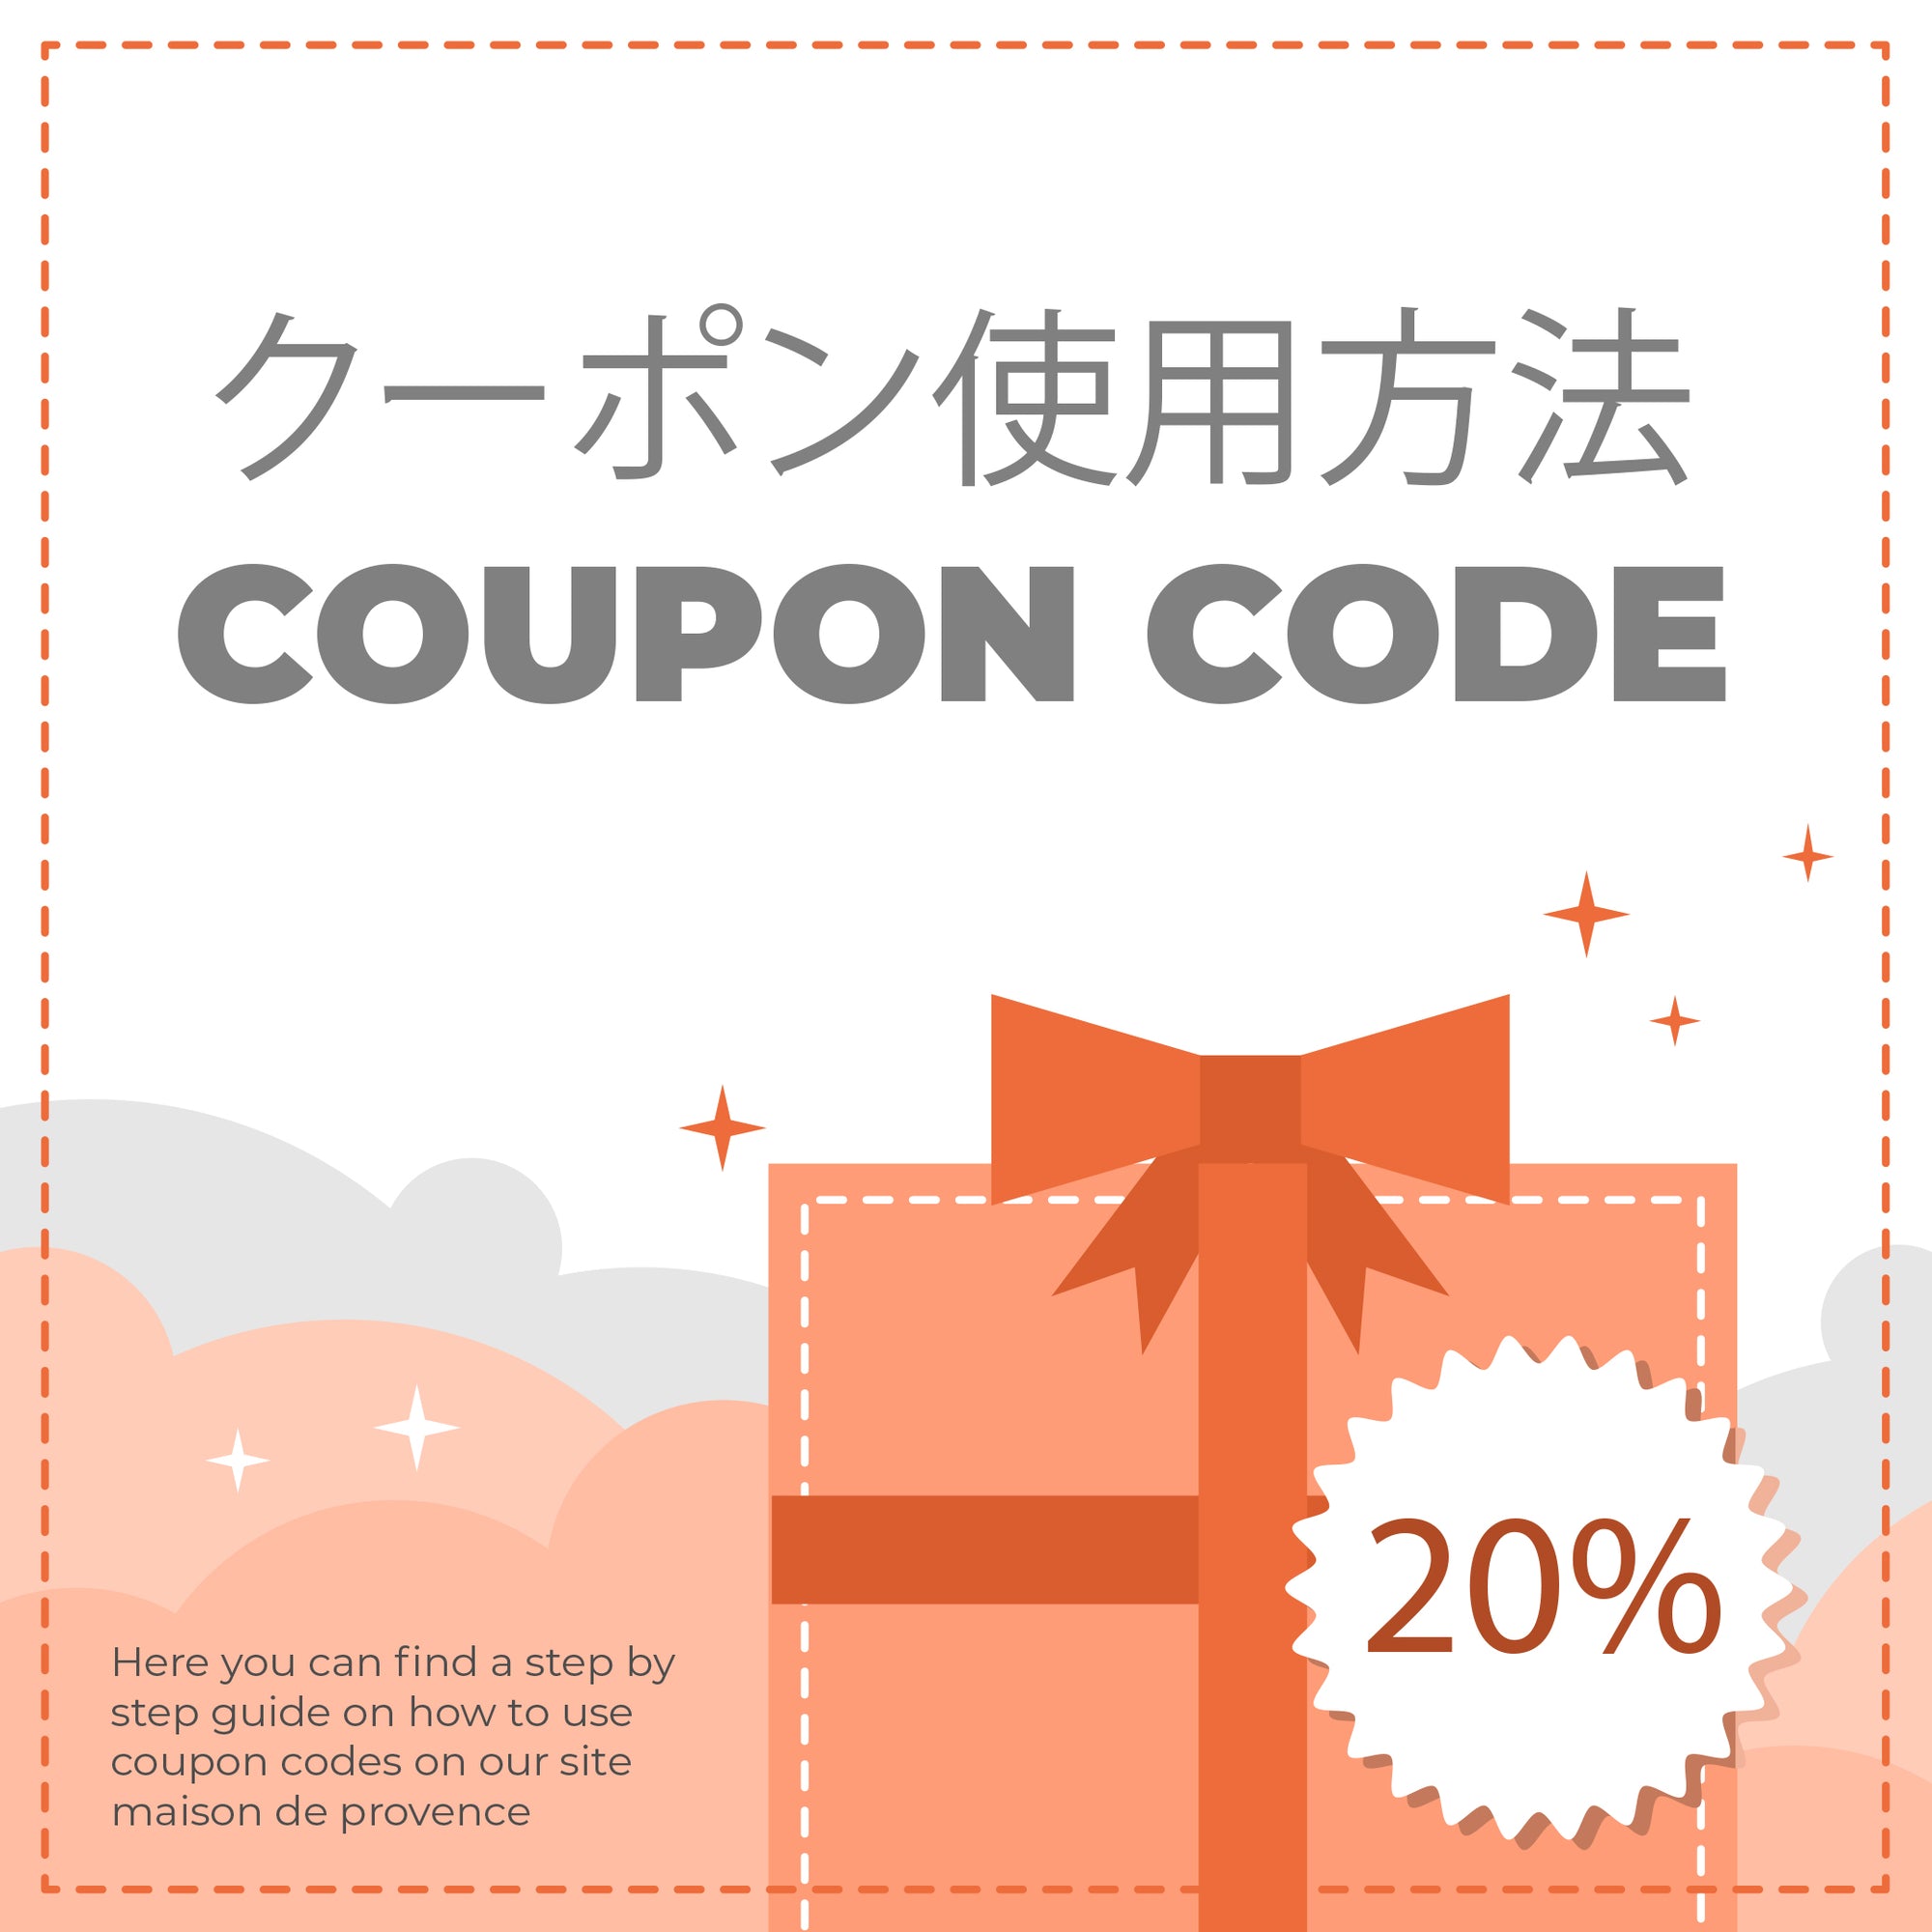 クーポン使用方法 (coupon code)